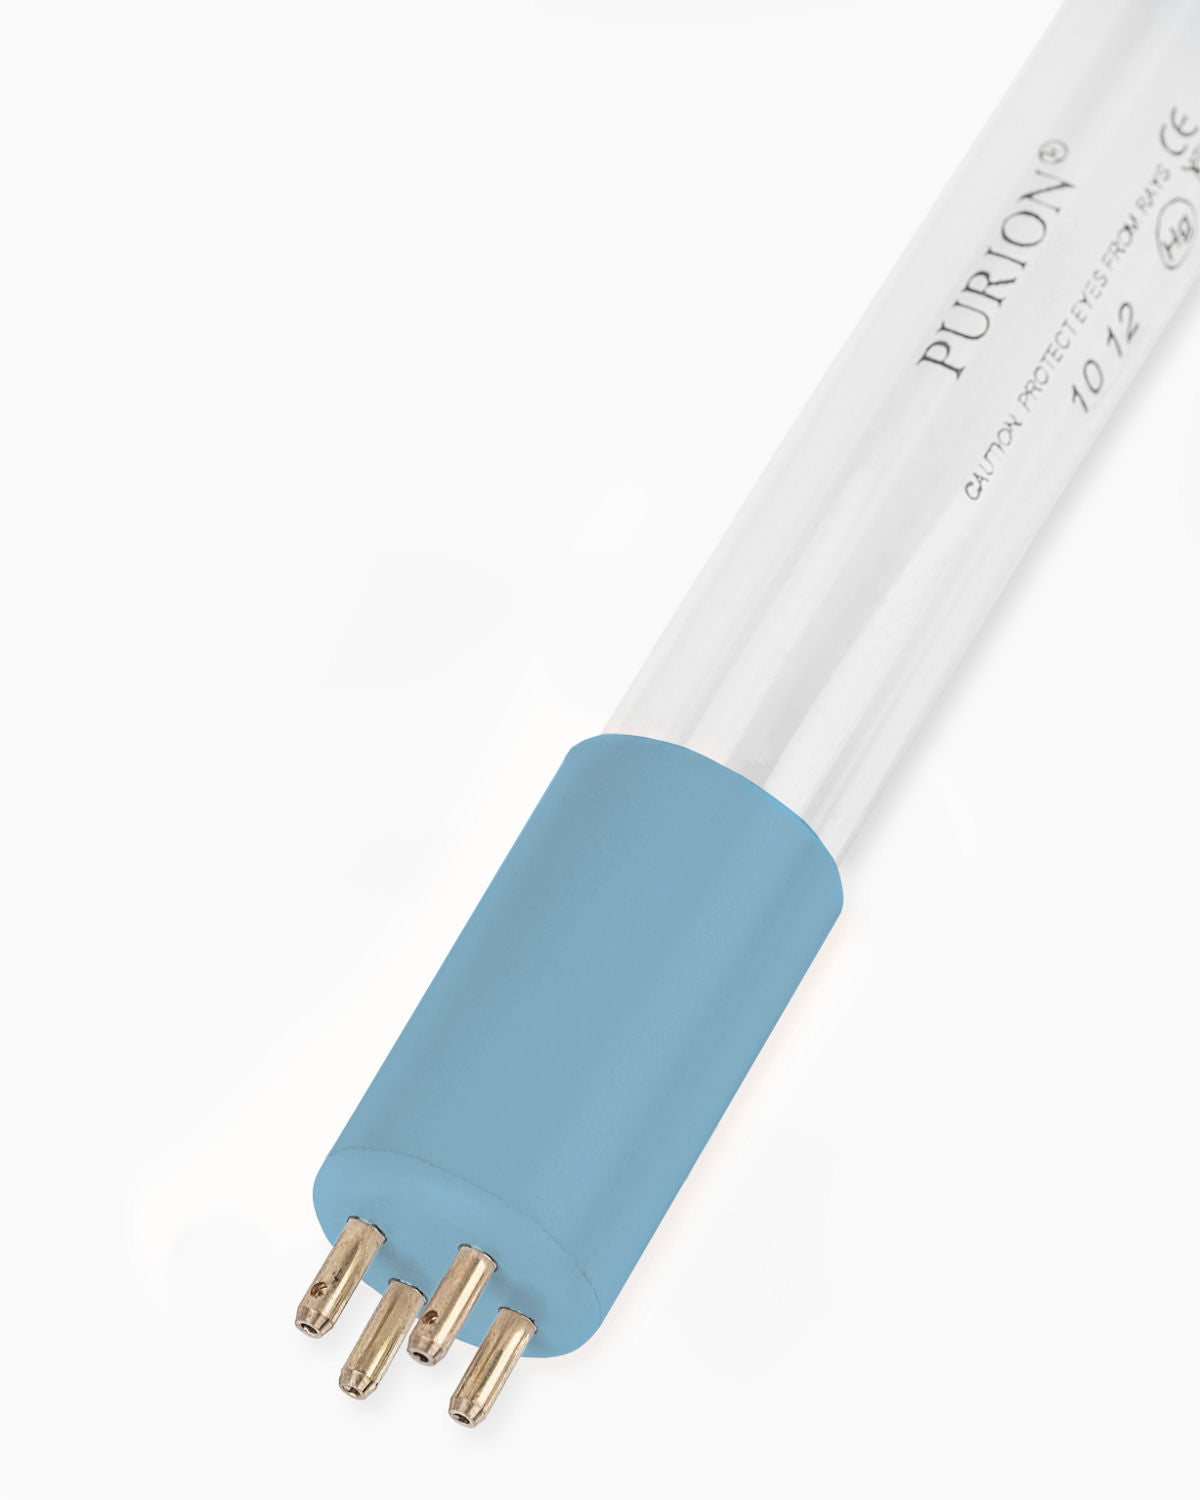 Eine „PURION 2001 Basic“ Blaulichtröhre auf weißem Hintergrund zur UV-C-Desinfektion.